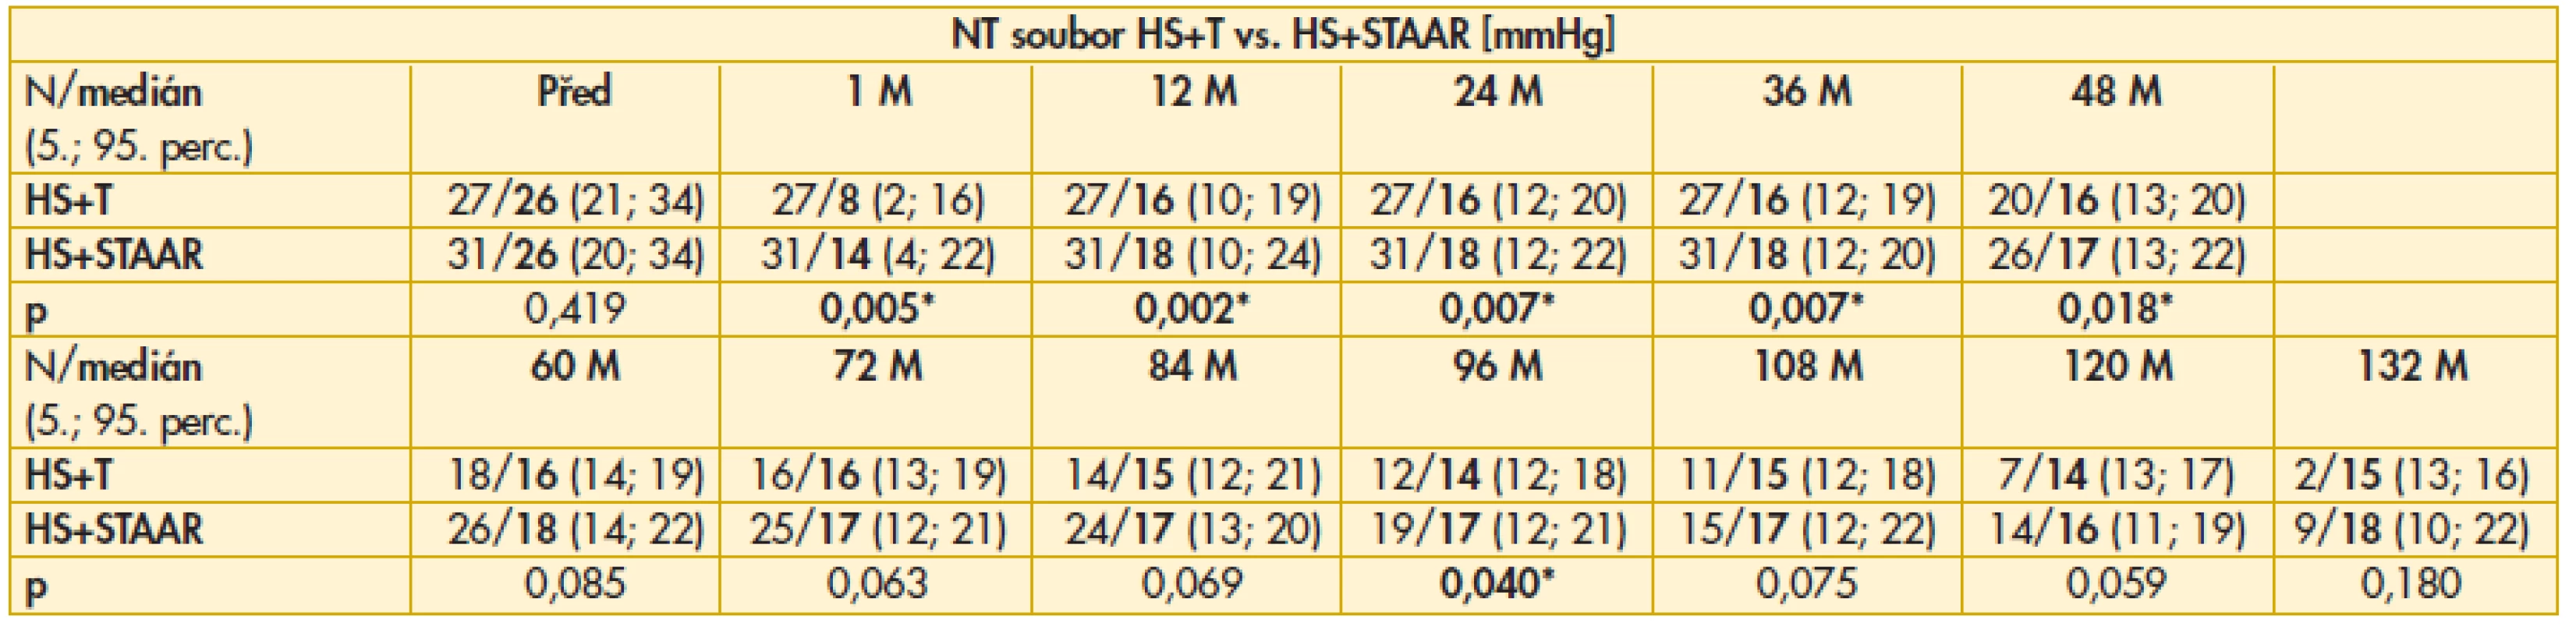 Výsledky srovnání hodnot NT mezi soubory HS+T vs. HS+STAAR před a po operaci